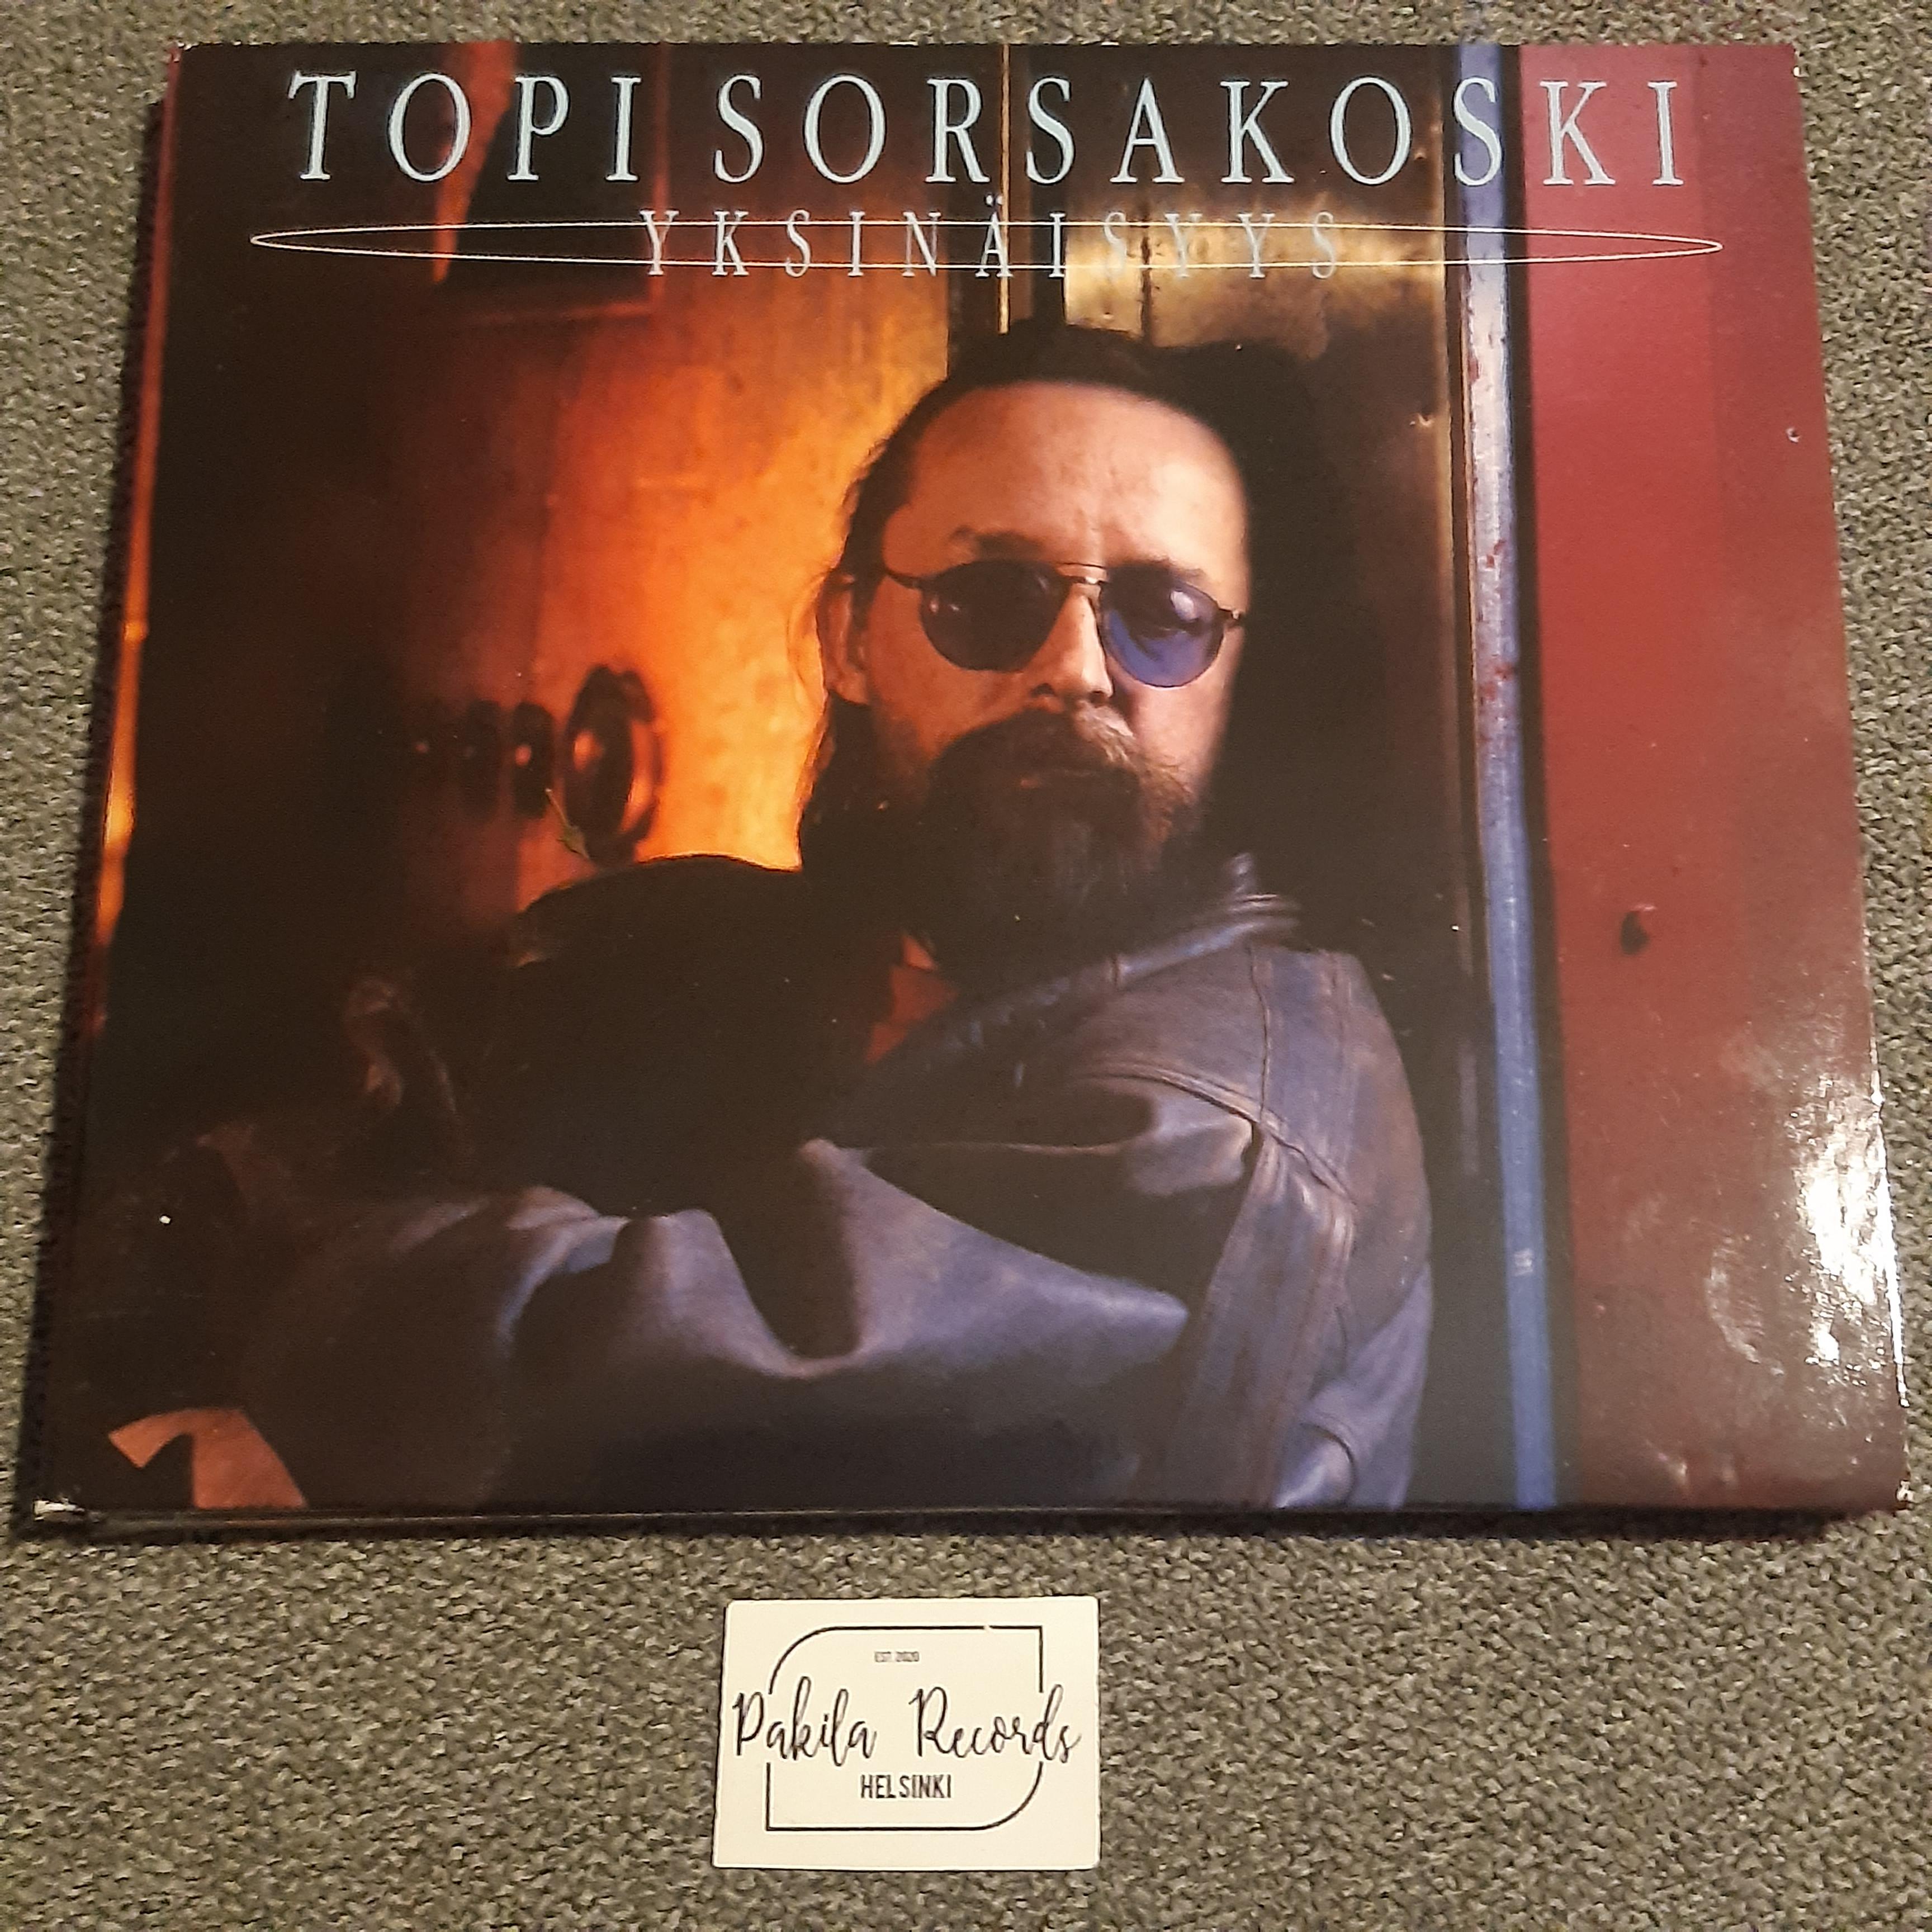 Topi Sorsakoski - Yksinäisyys - CD (käytetty)